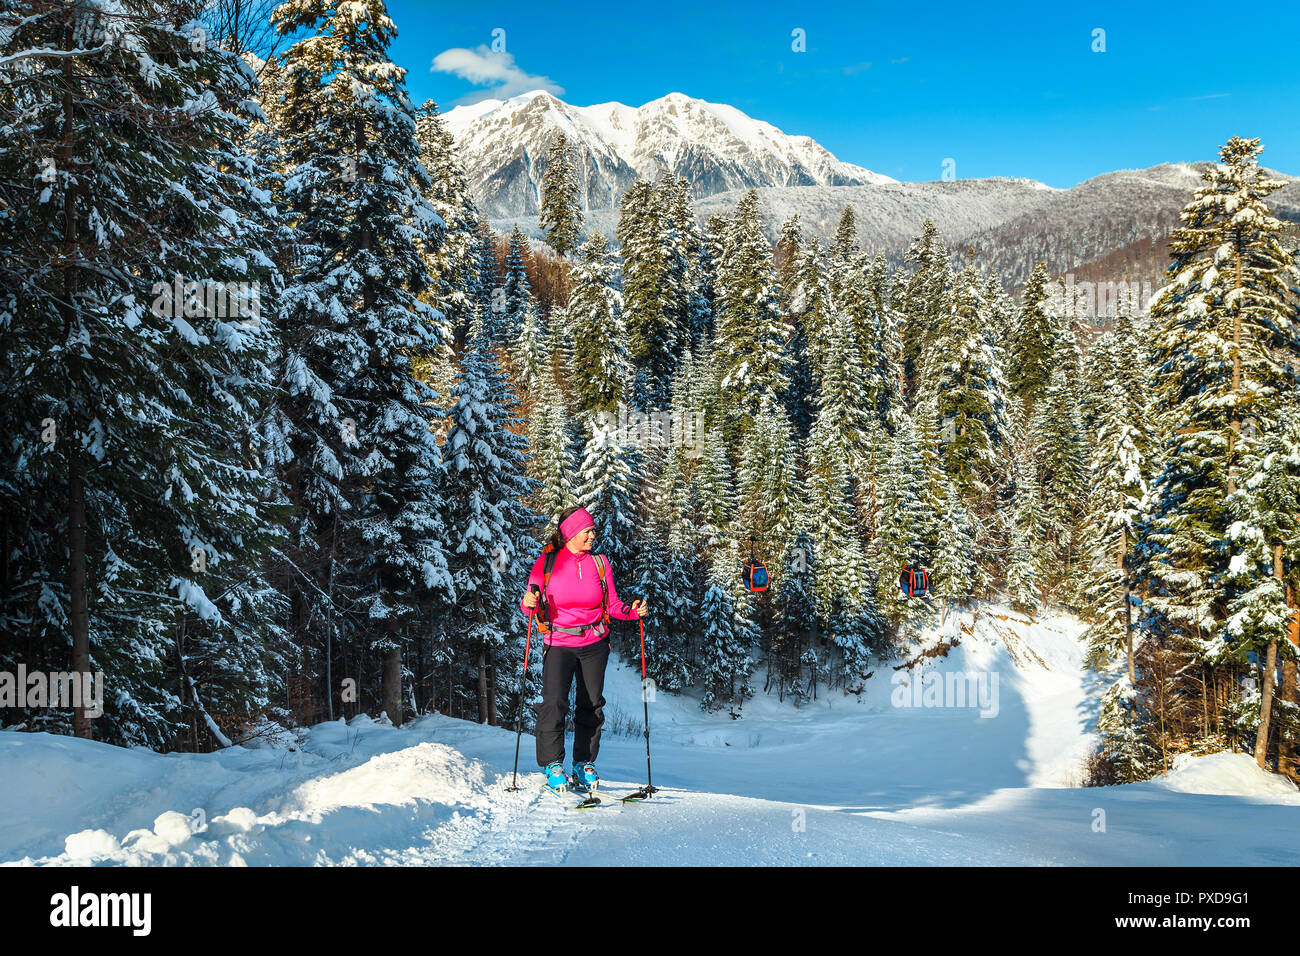 Skitouren in den verschneiten Wald und Bucegi Bergen im Hintergrund. Aktive sportliche Frau an die Spitze des Berges, der azuga Skipiste, Siebenbürgen, R Stockfoto